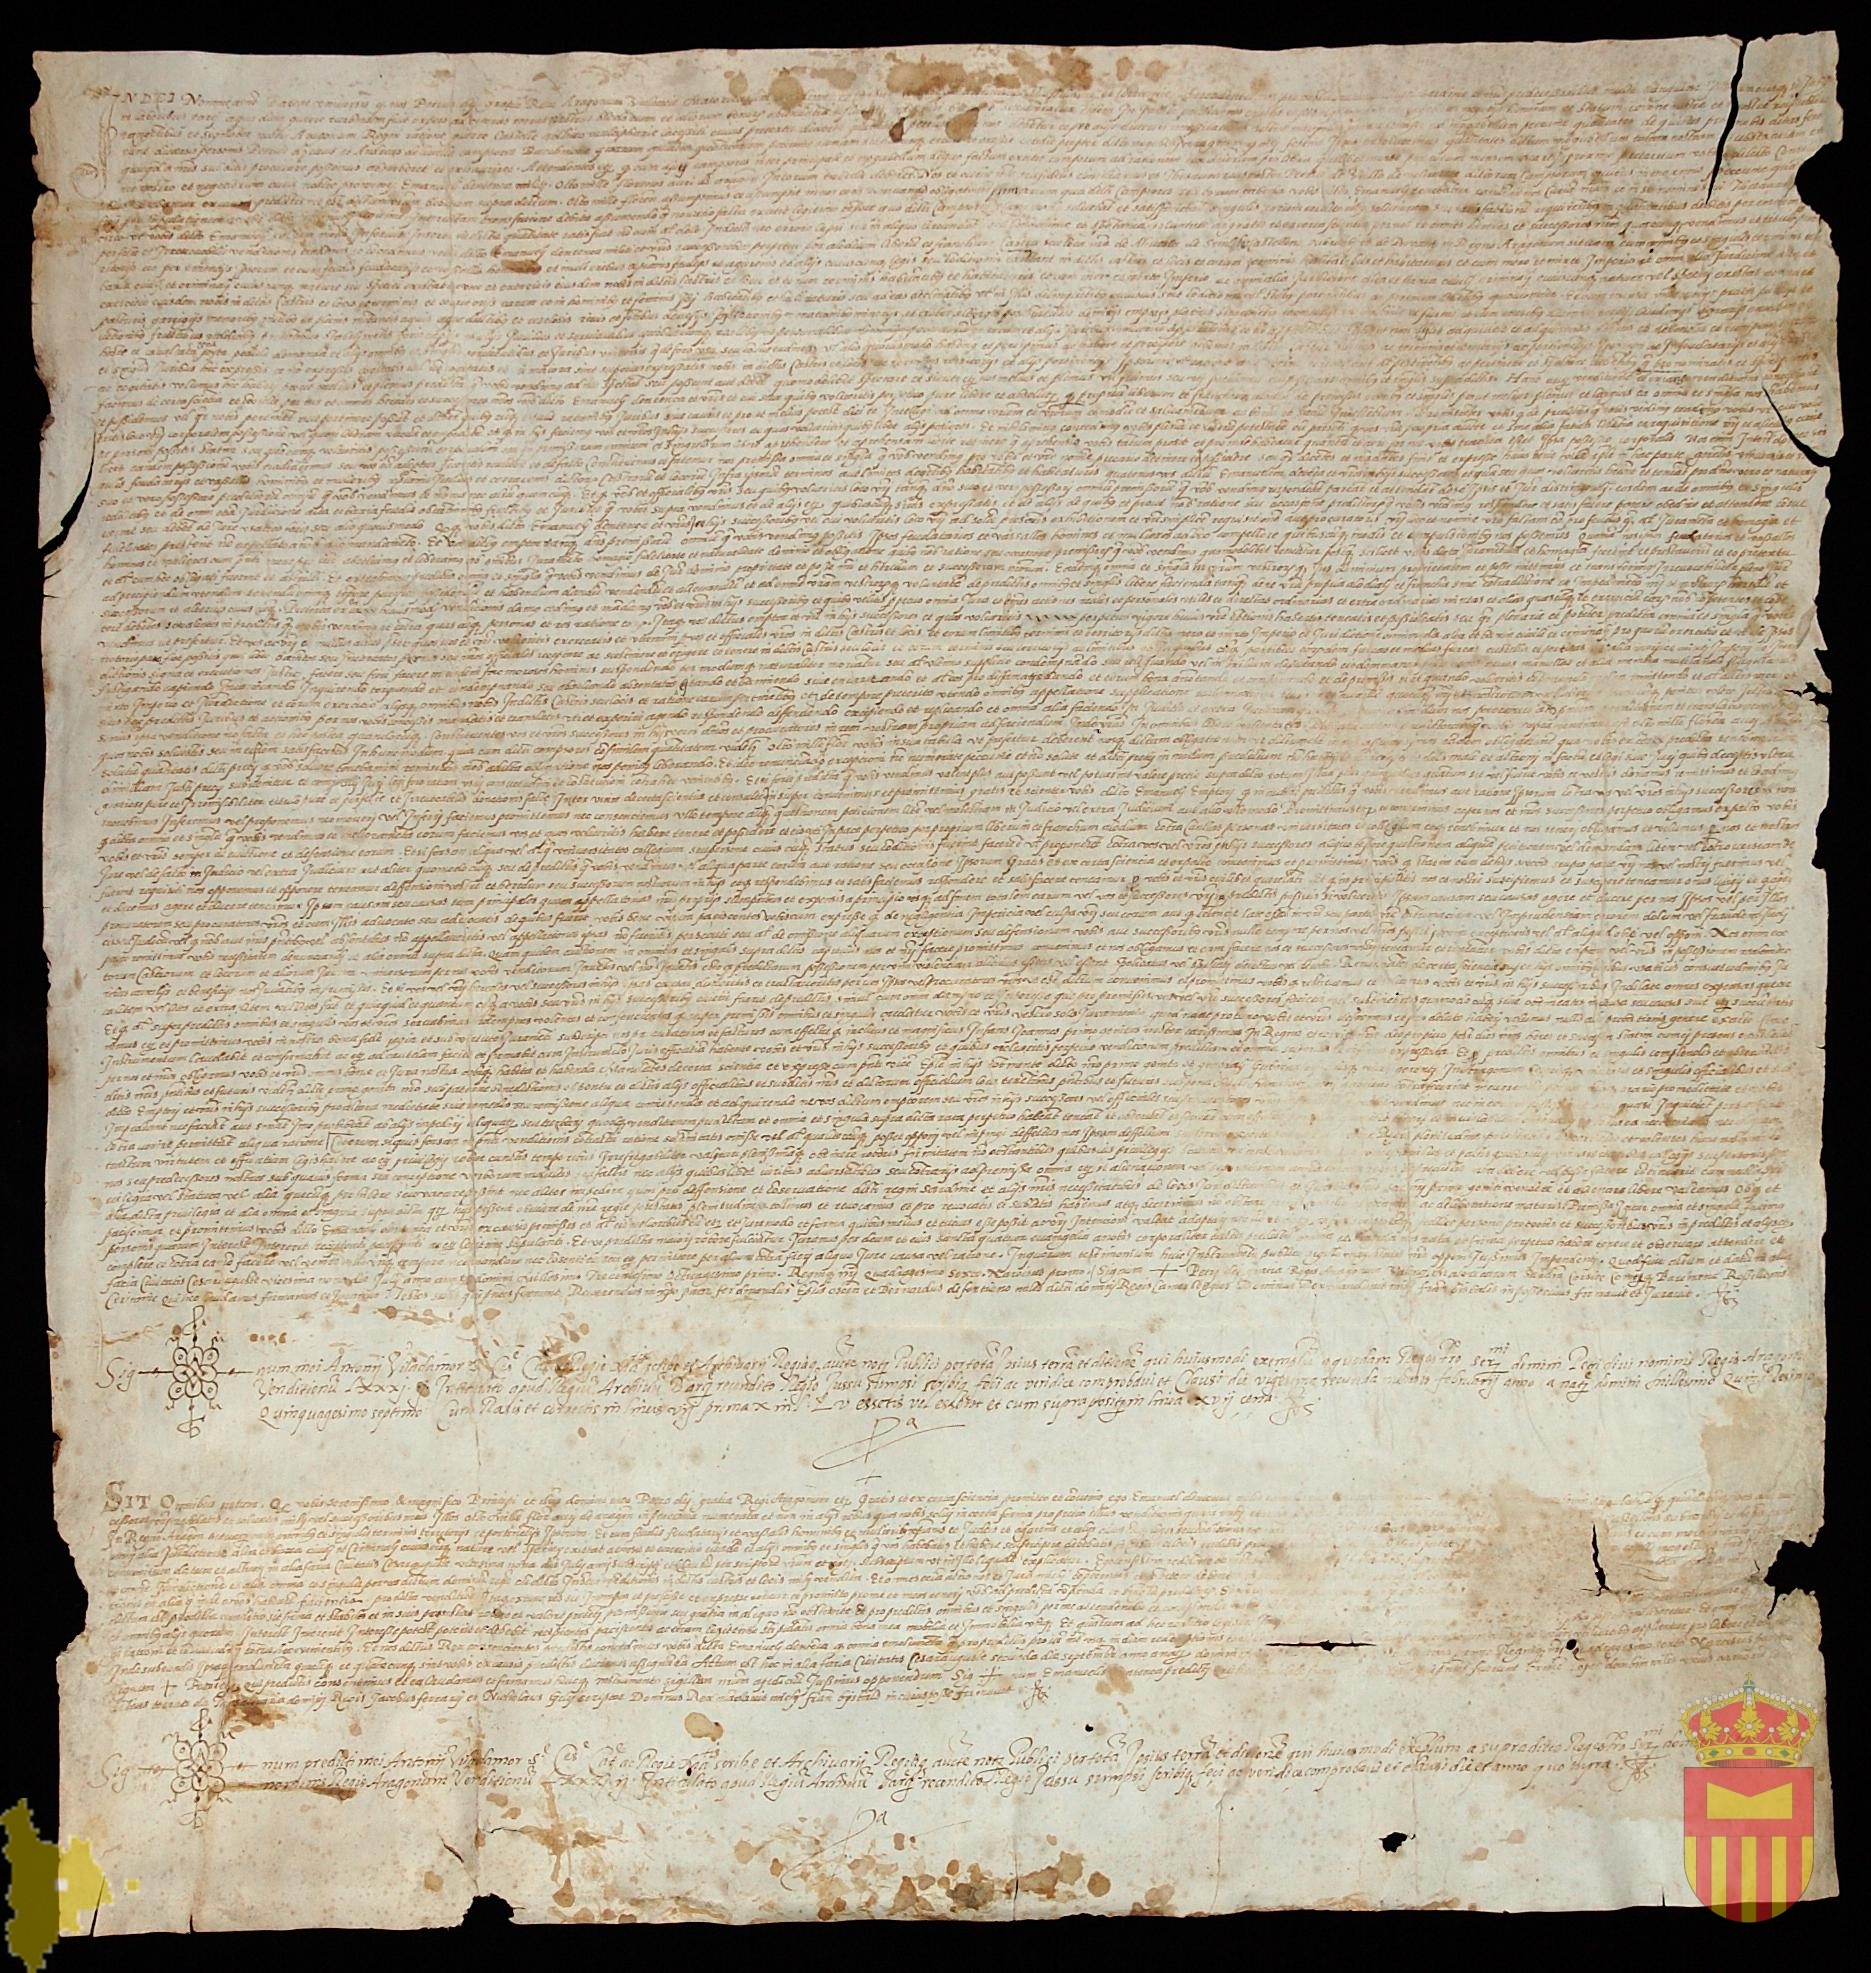 Traslado notarial de Antonio Viladamor del privilegio de Pedro IV por el que vende a Manuel de Entença Pozán de Vero, Castejón de Sobrarbe, Adahuesca y Sevil en 29 de julio de 1381 por precio de 8000 florines